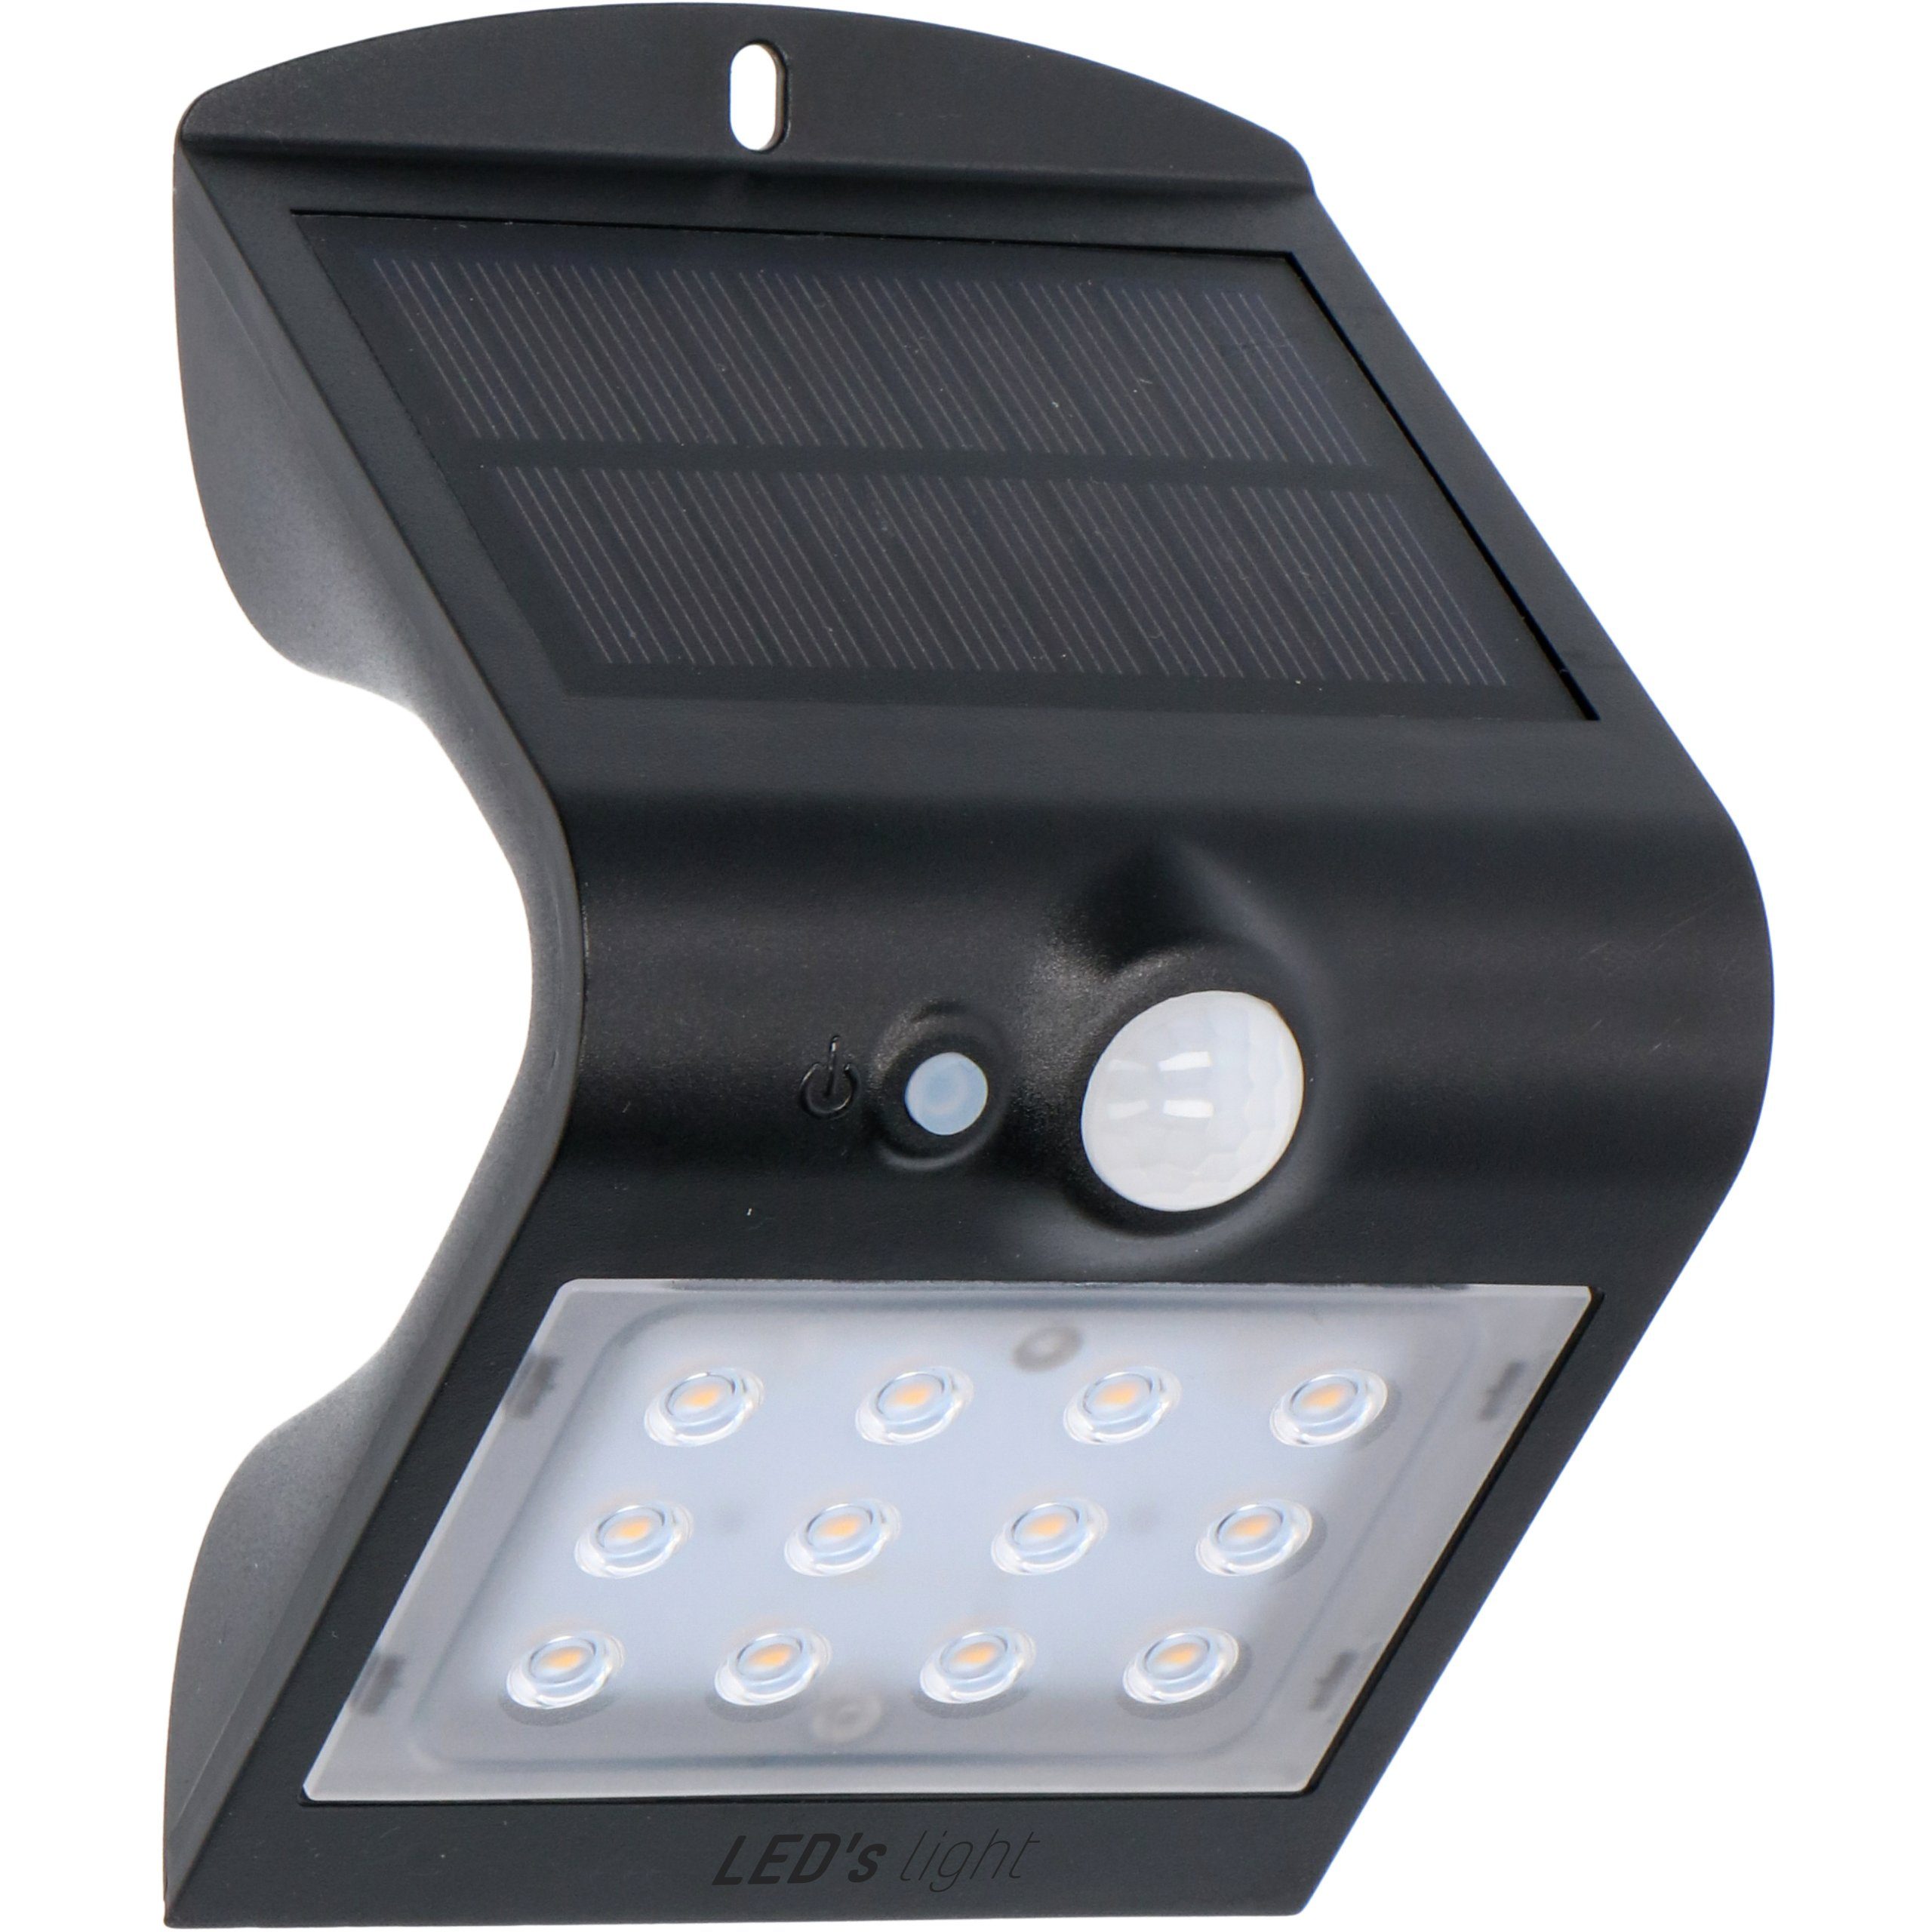 LED's light LED Solarleuchte 0300411 LED Solar Außenleuchte, LED, mit Bewegungsmelder 1,5 Watt warmweiß IP65 Backlight